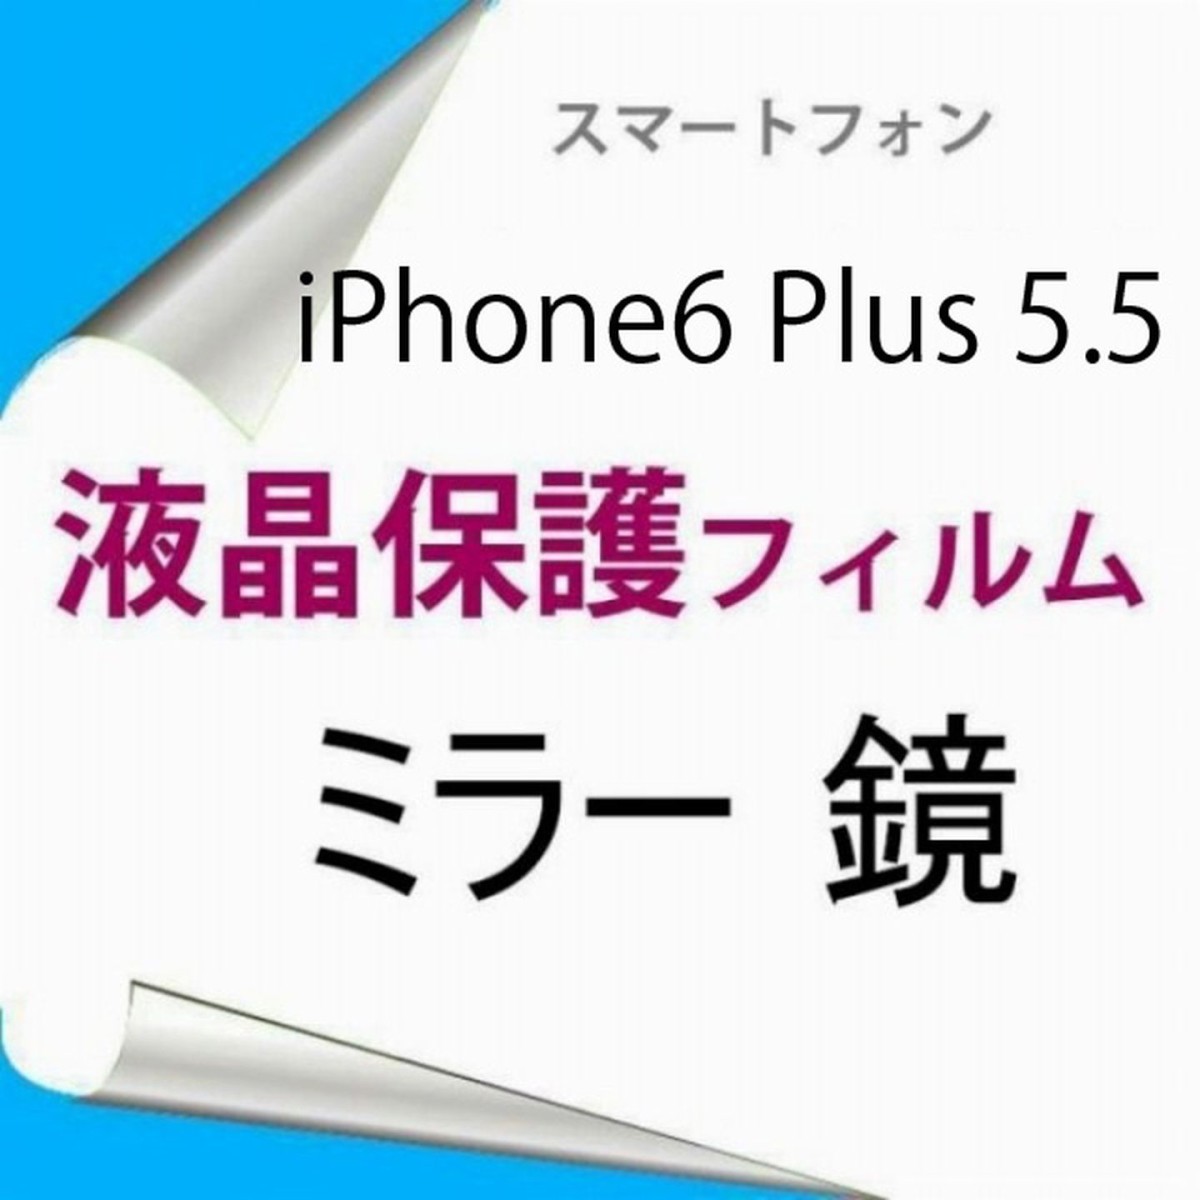 【2枚】 iPhone6 Plus iPhone6s Plus 5.5インチ 液晶保護フィルム ミラー 鏡 高光沢 クリア